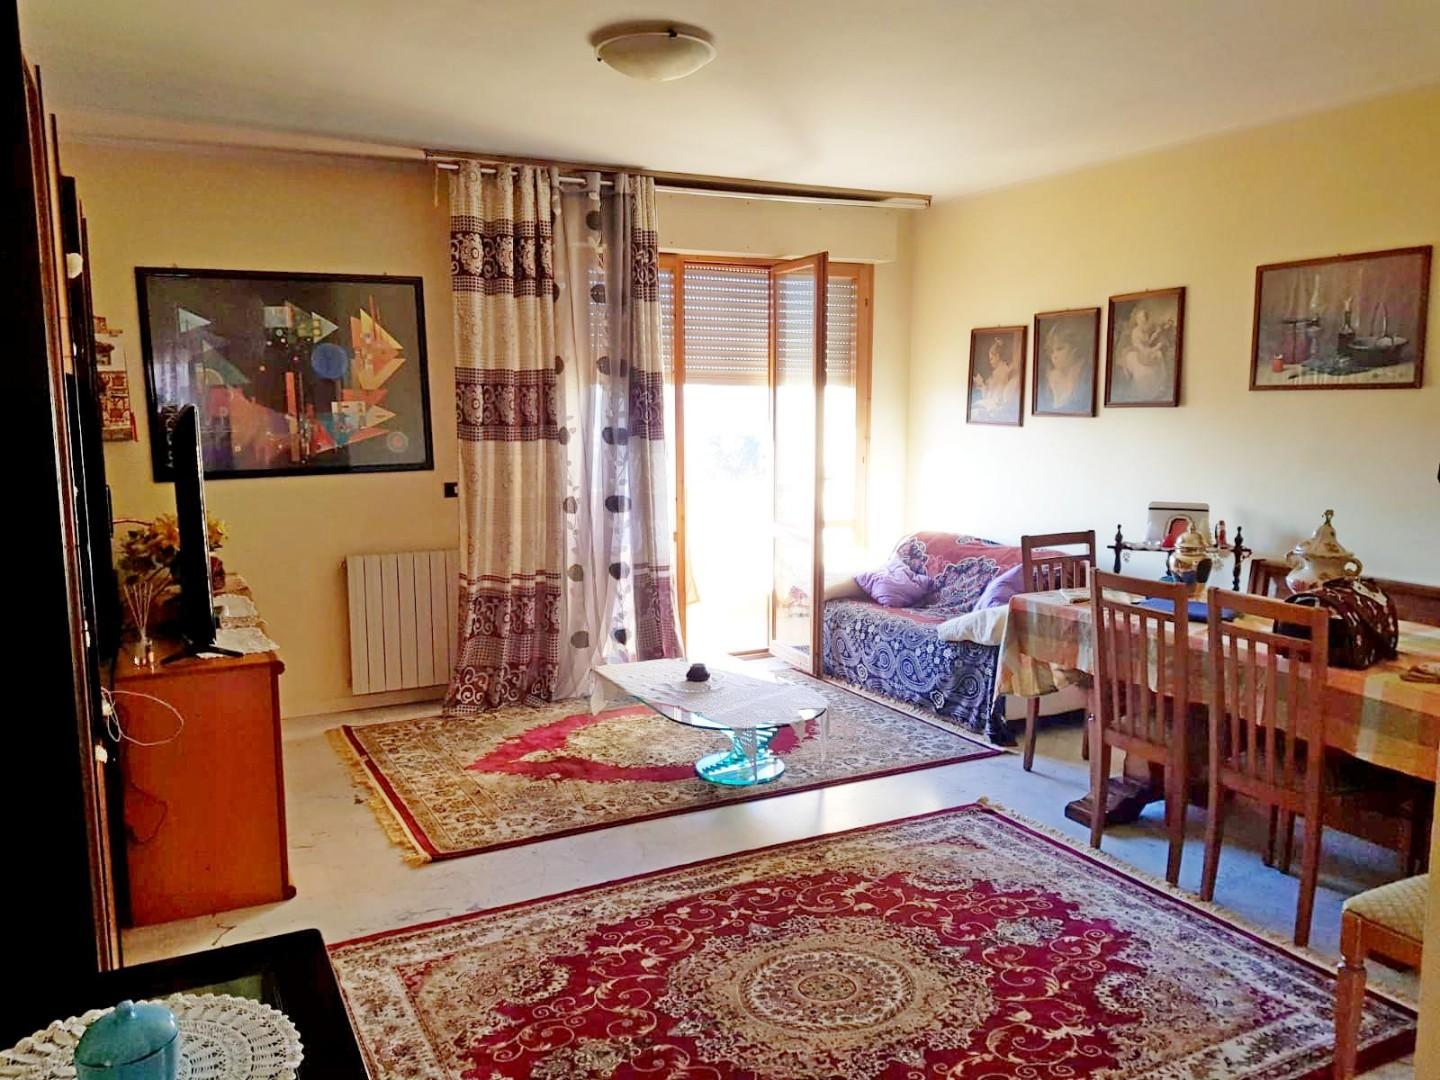 Apartment for sale in Montignoso (MS)